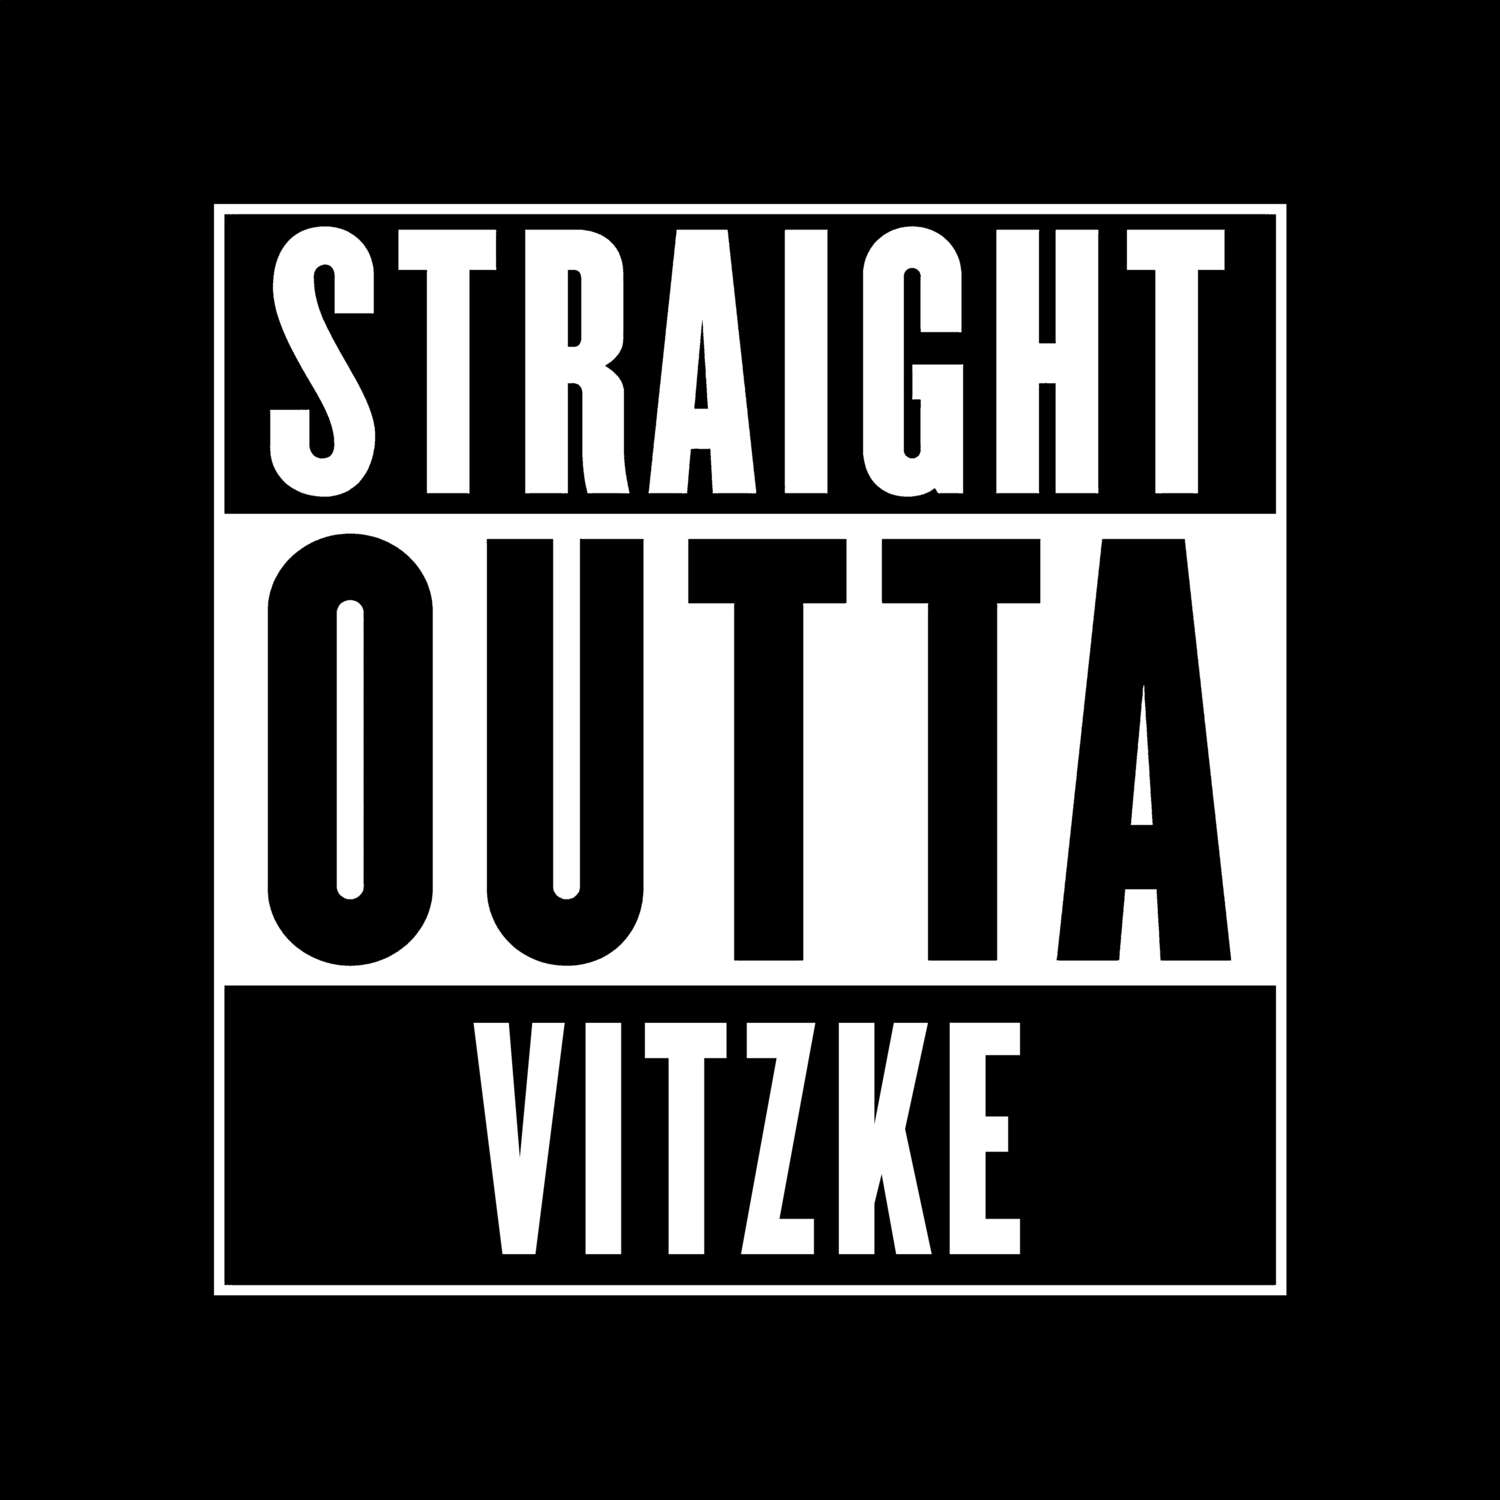 Vitzke T-Shirt »Straight Outta«